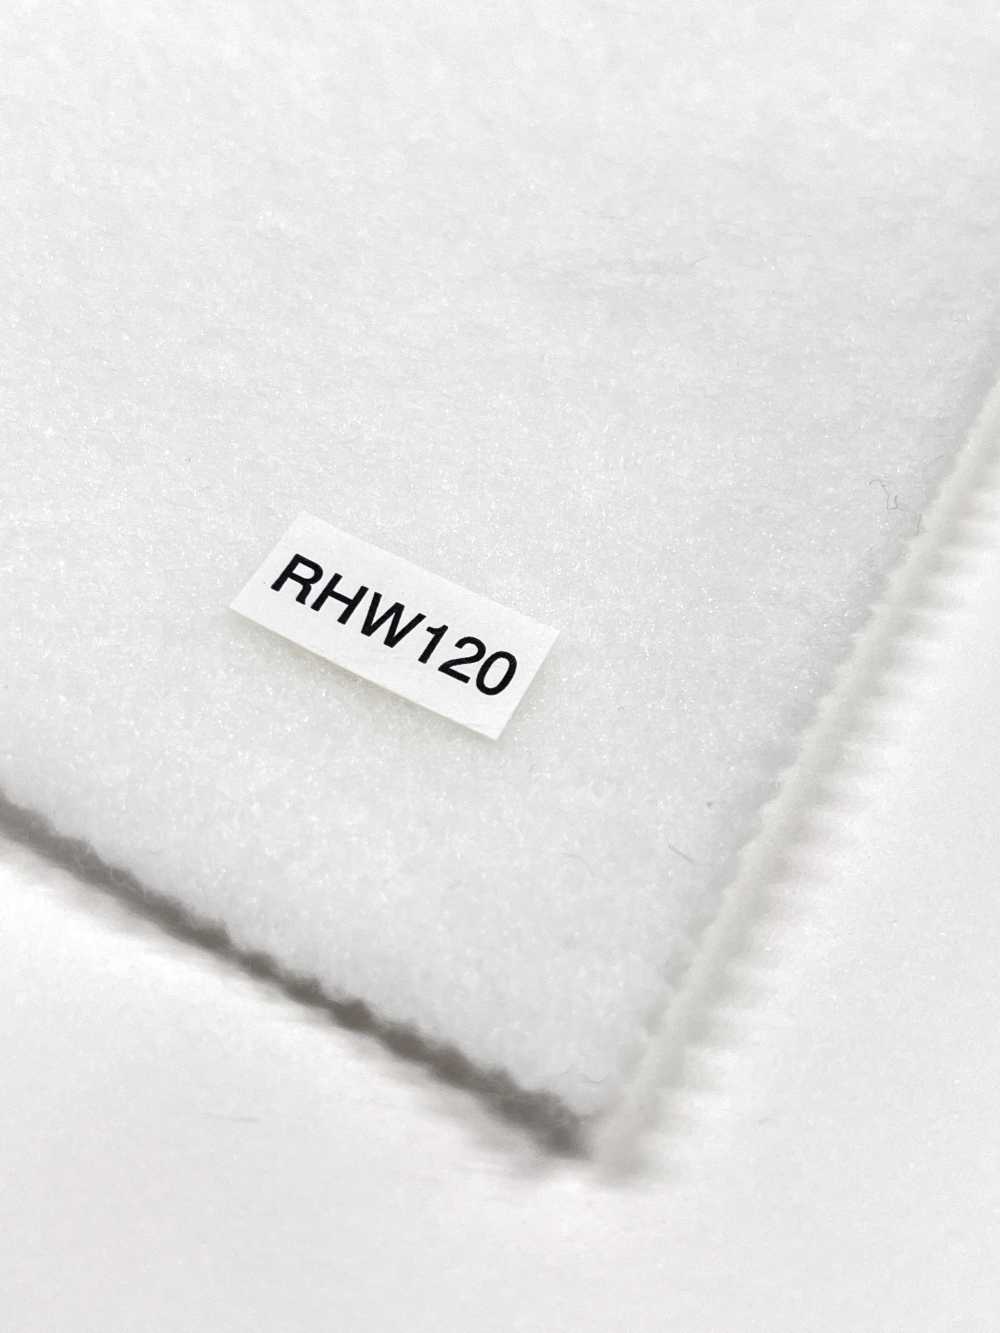 RHW120 Conbel NOWVEN(R) Serie Domit Fusible Interlining Soft Type[Interfodera] Conbel